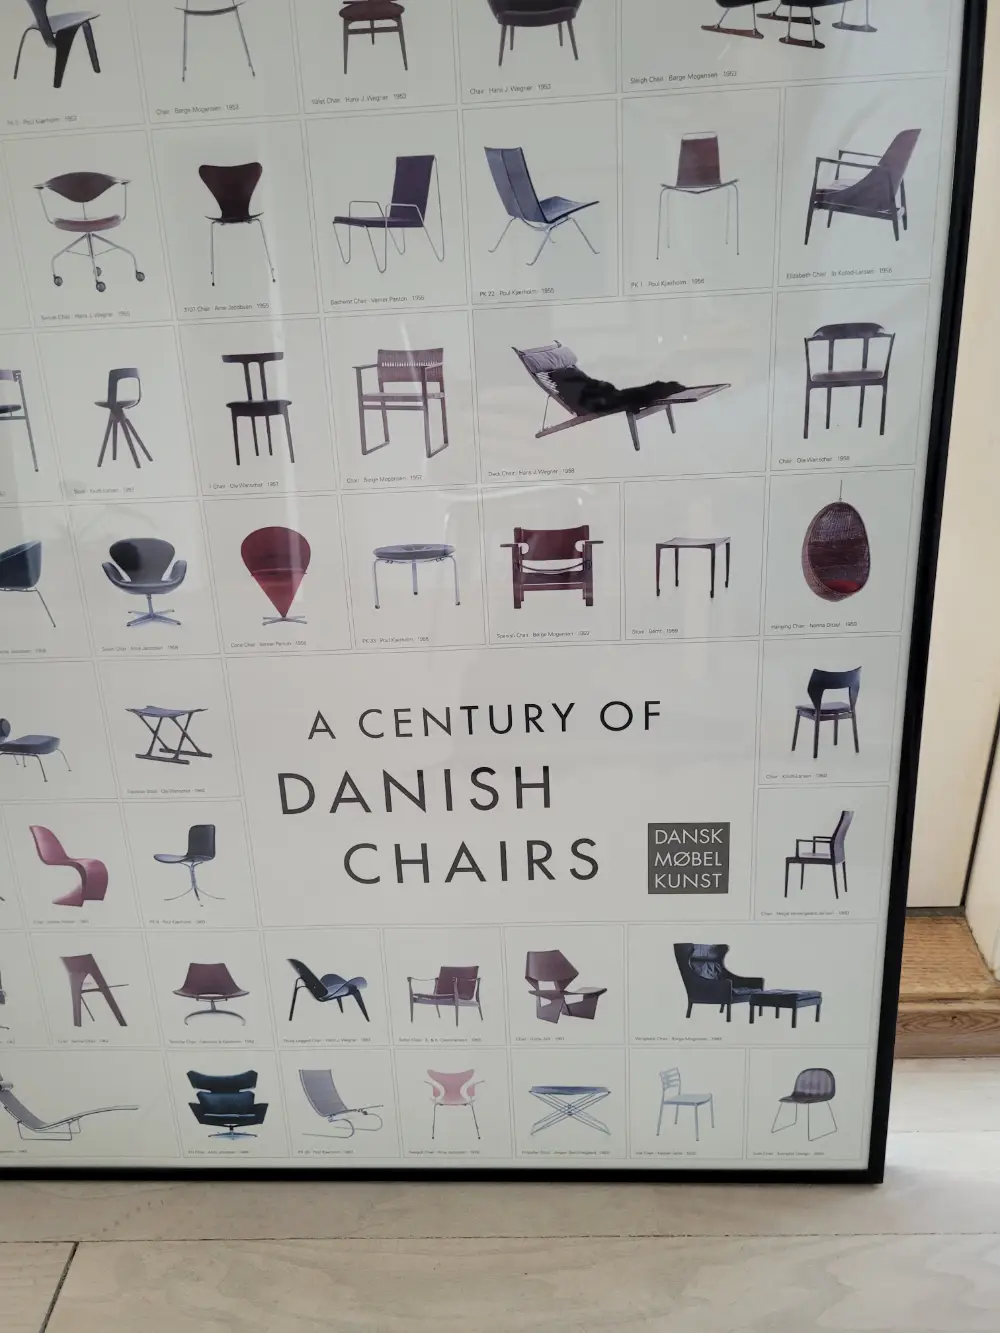 Køb A Century of Danish Chairs Plakat af Anne på Reshopper · secondhand børn, mor og bolig